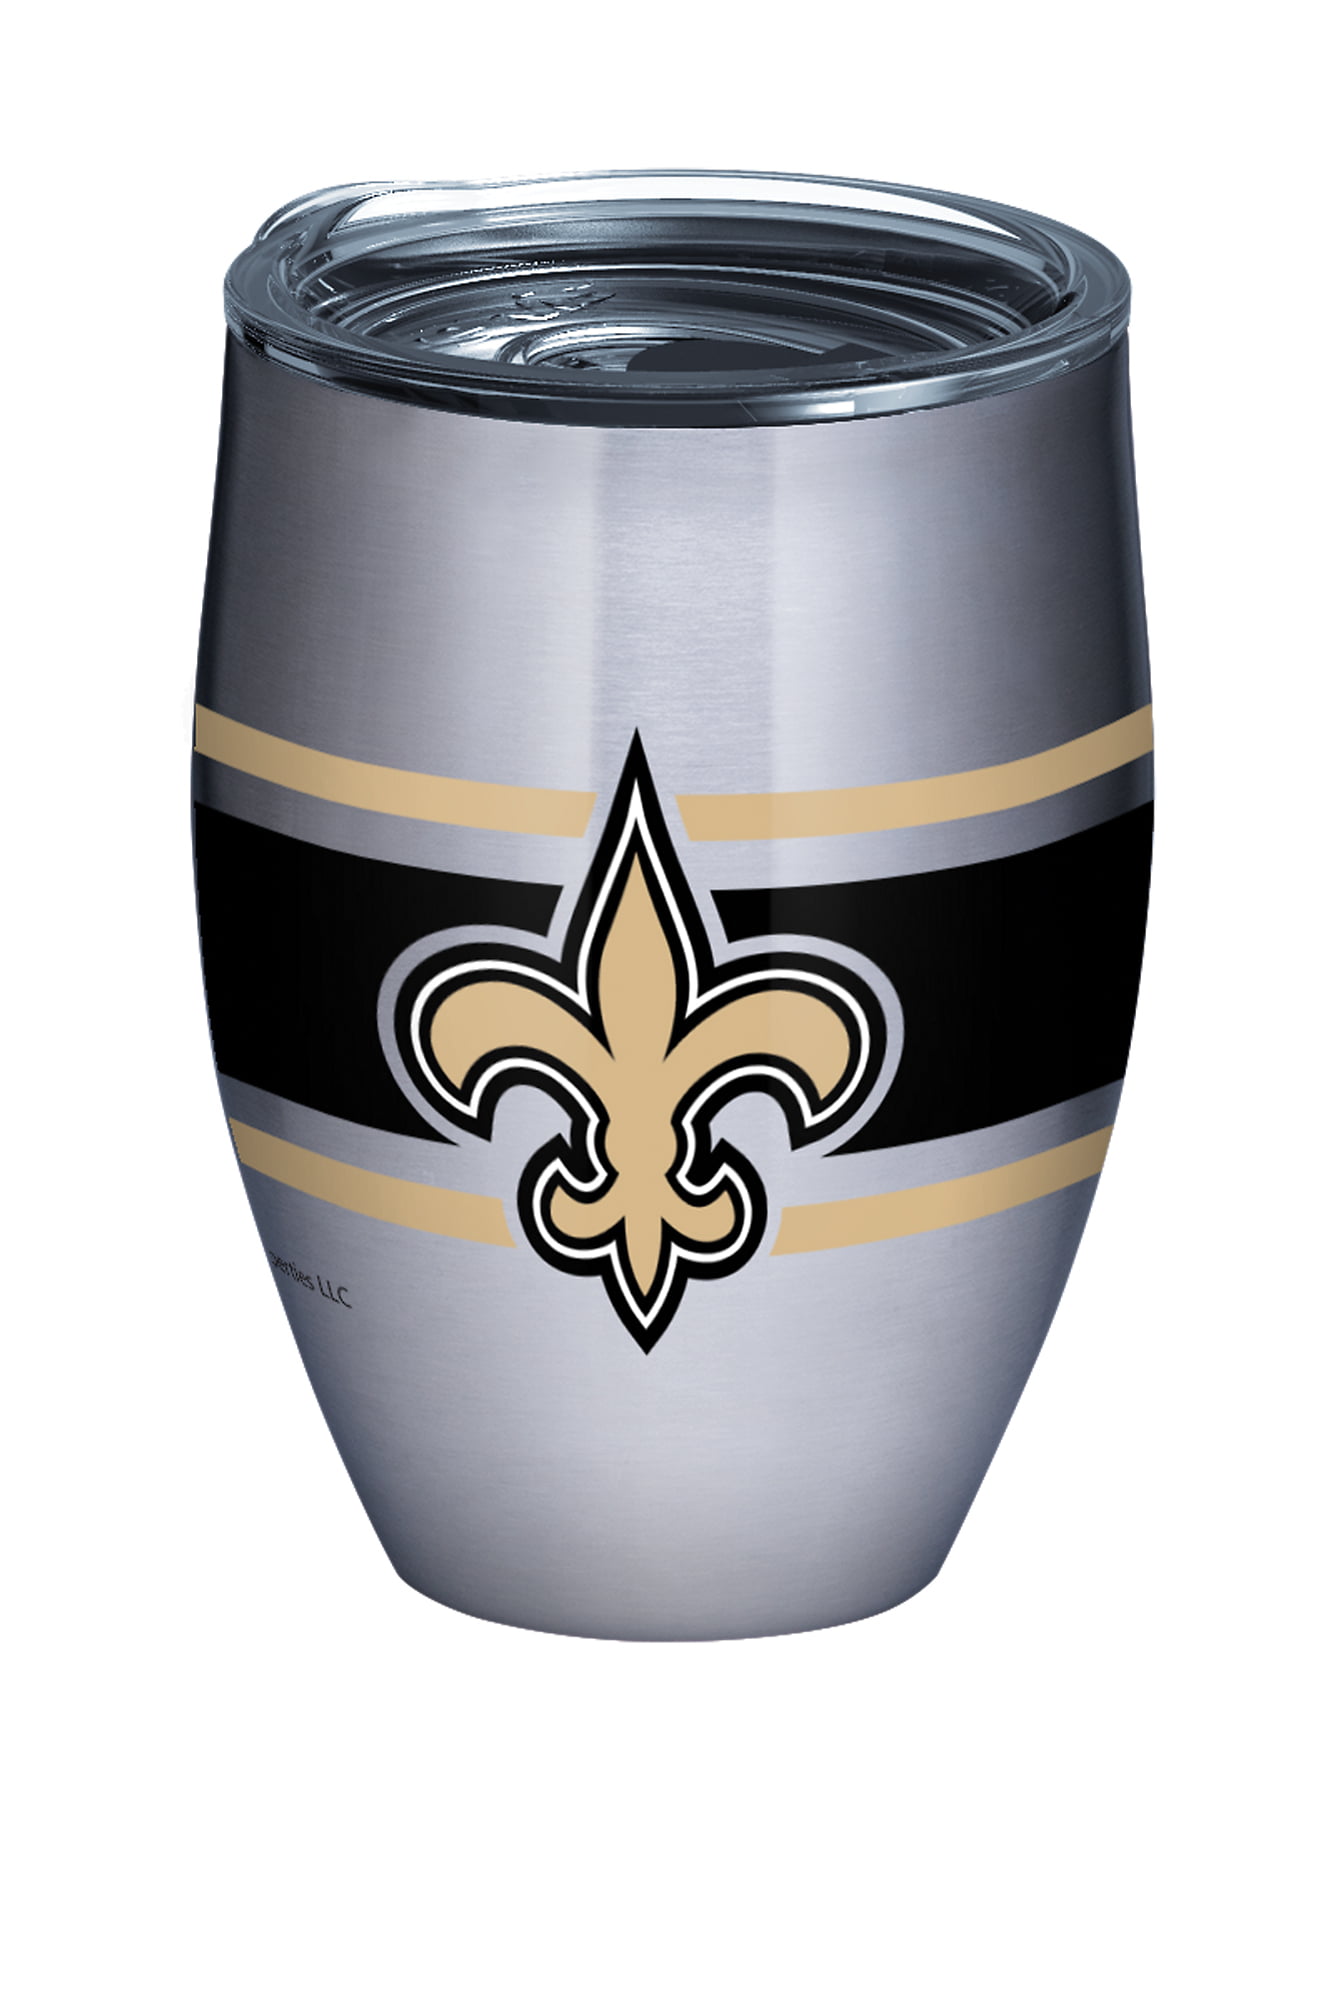 Tervis® NFL Tumbler - New Orleans Saints S-23789NOS - Uline